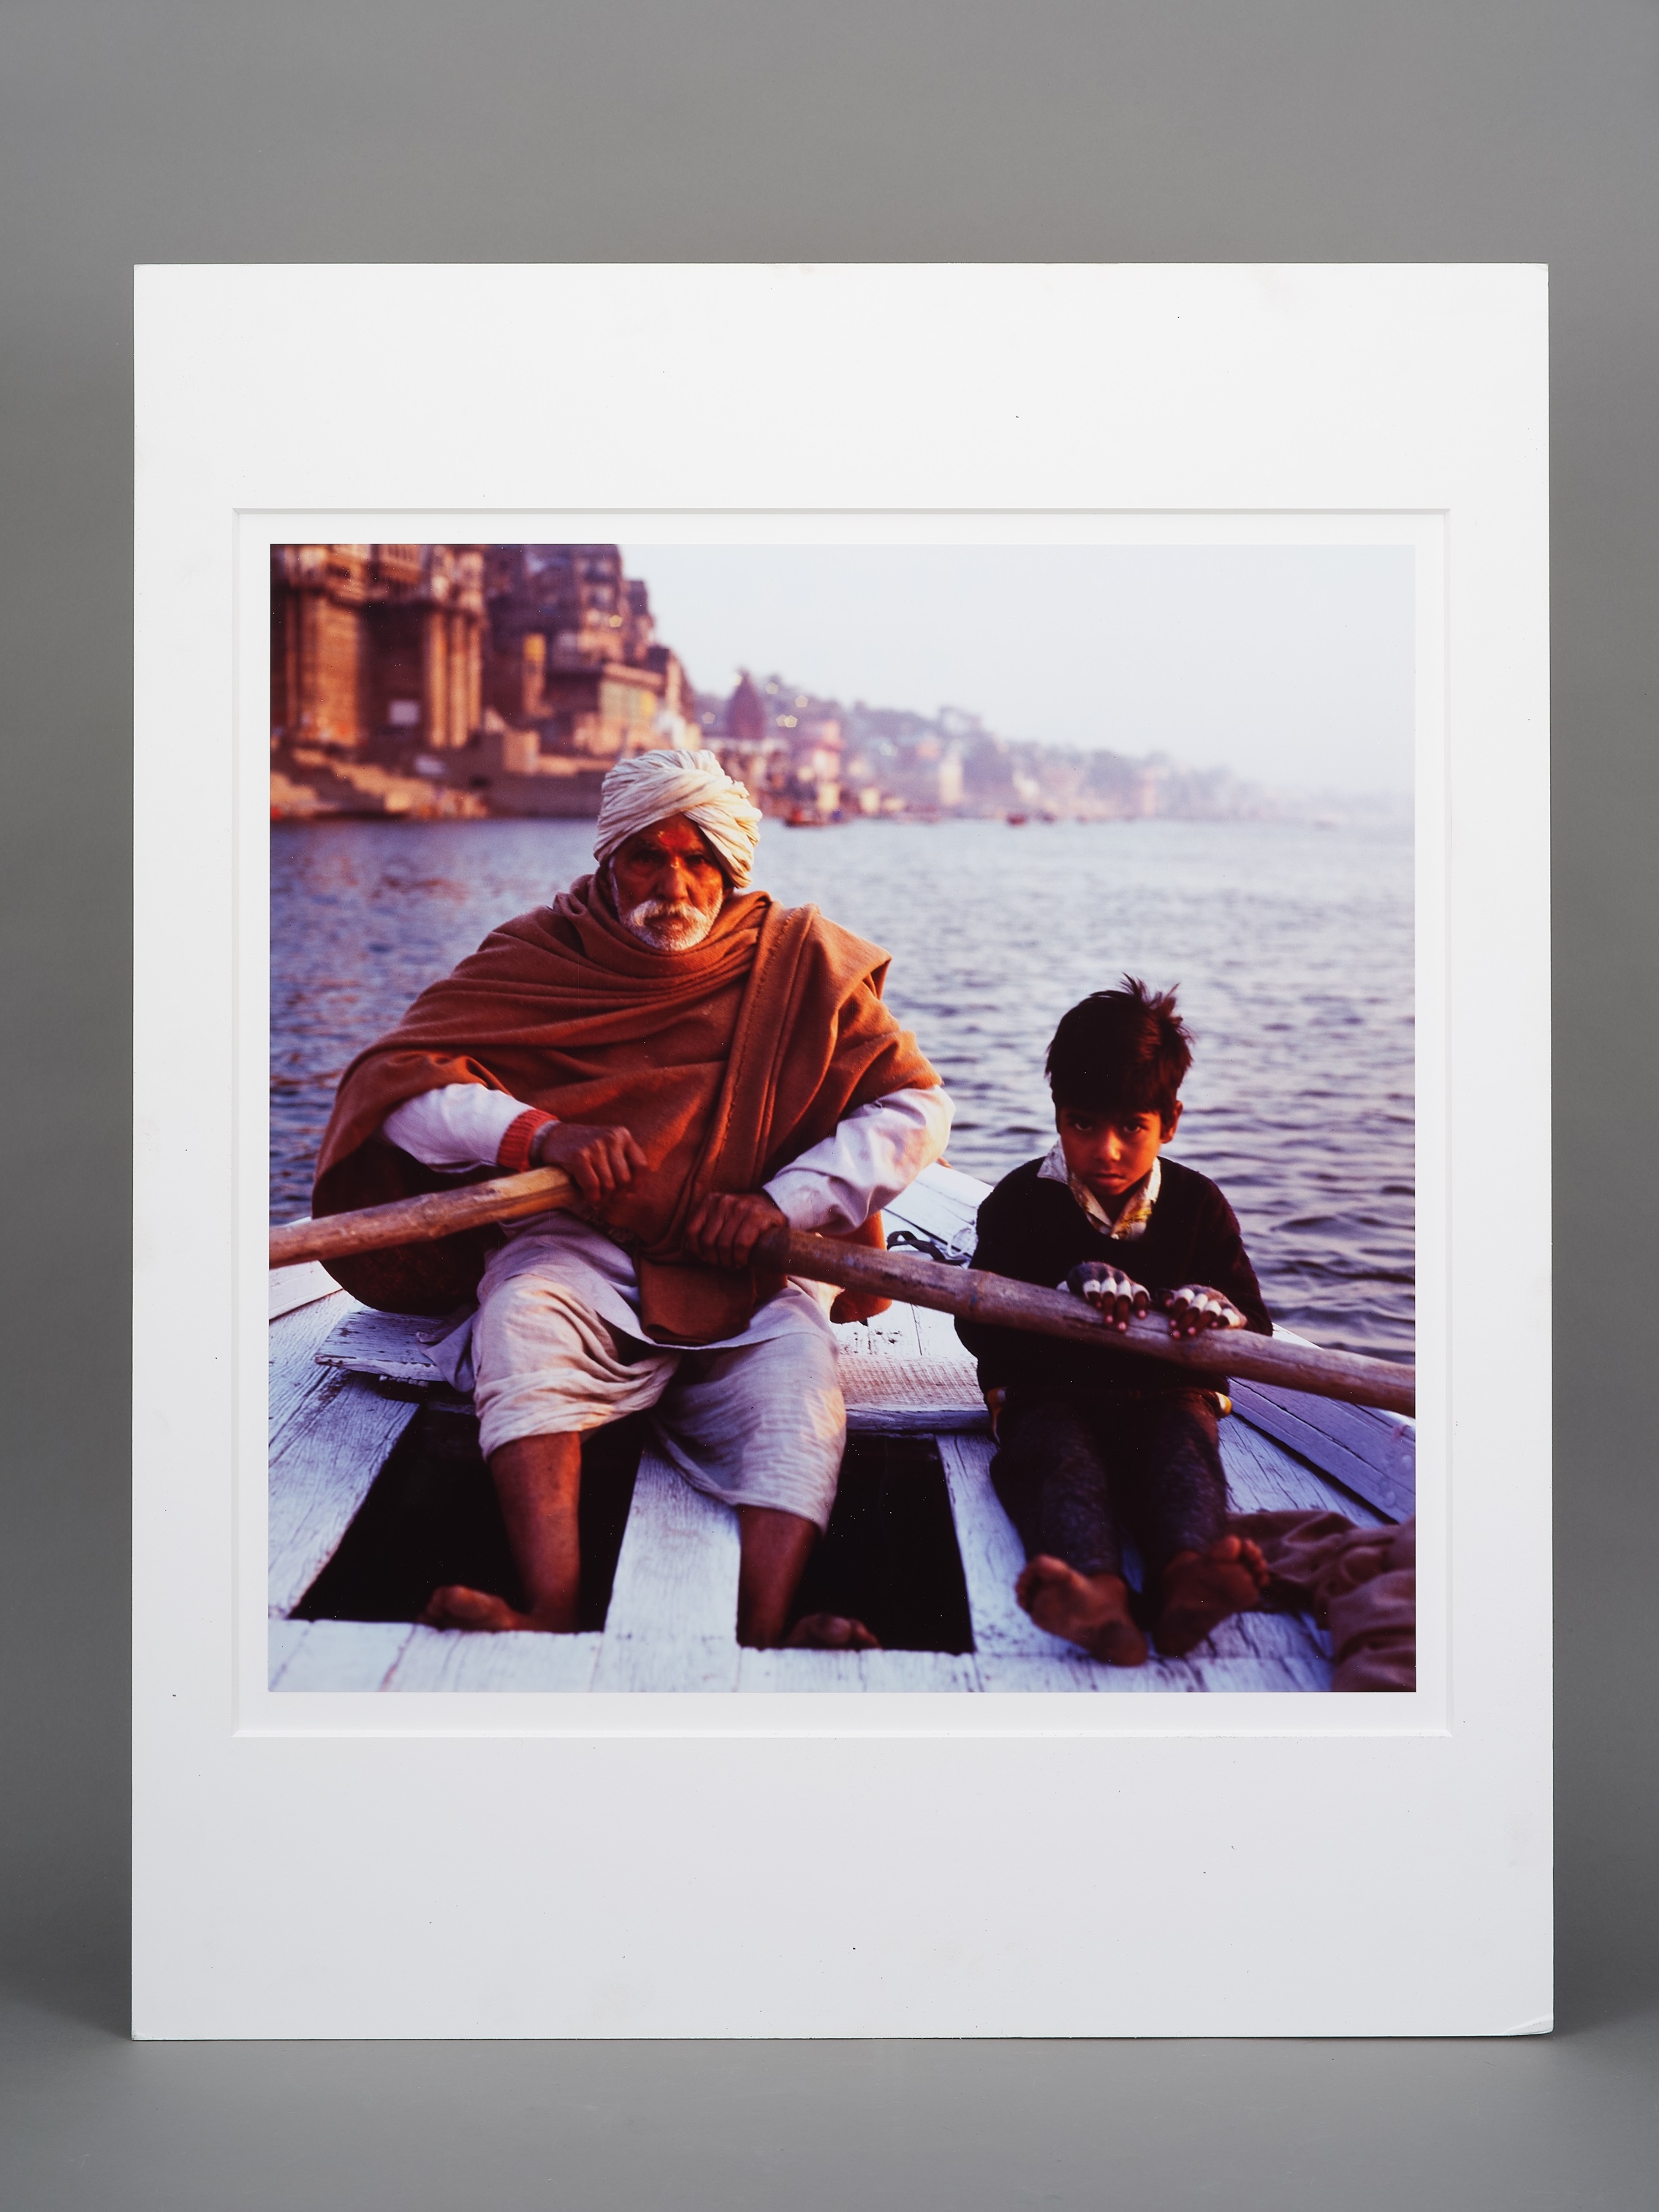 名稱:印度|作者:施安全|這幅拍攝於印度的攝影作品，為老男人與男孩一同划船的景象。